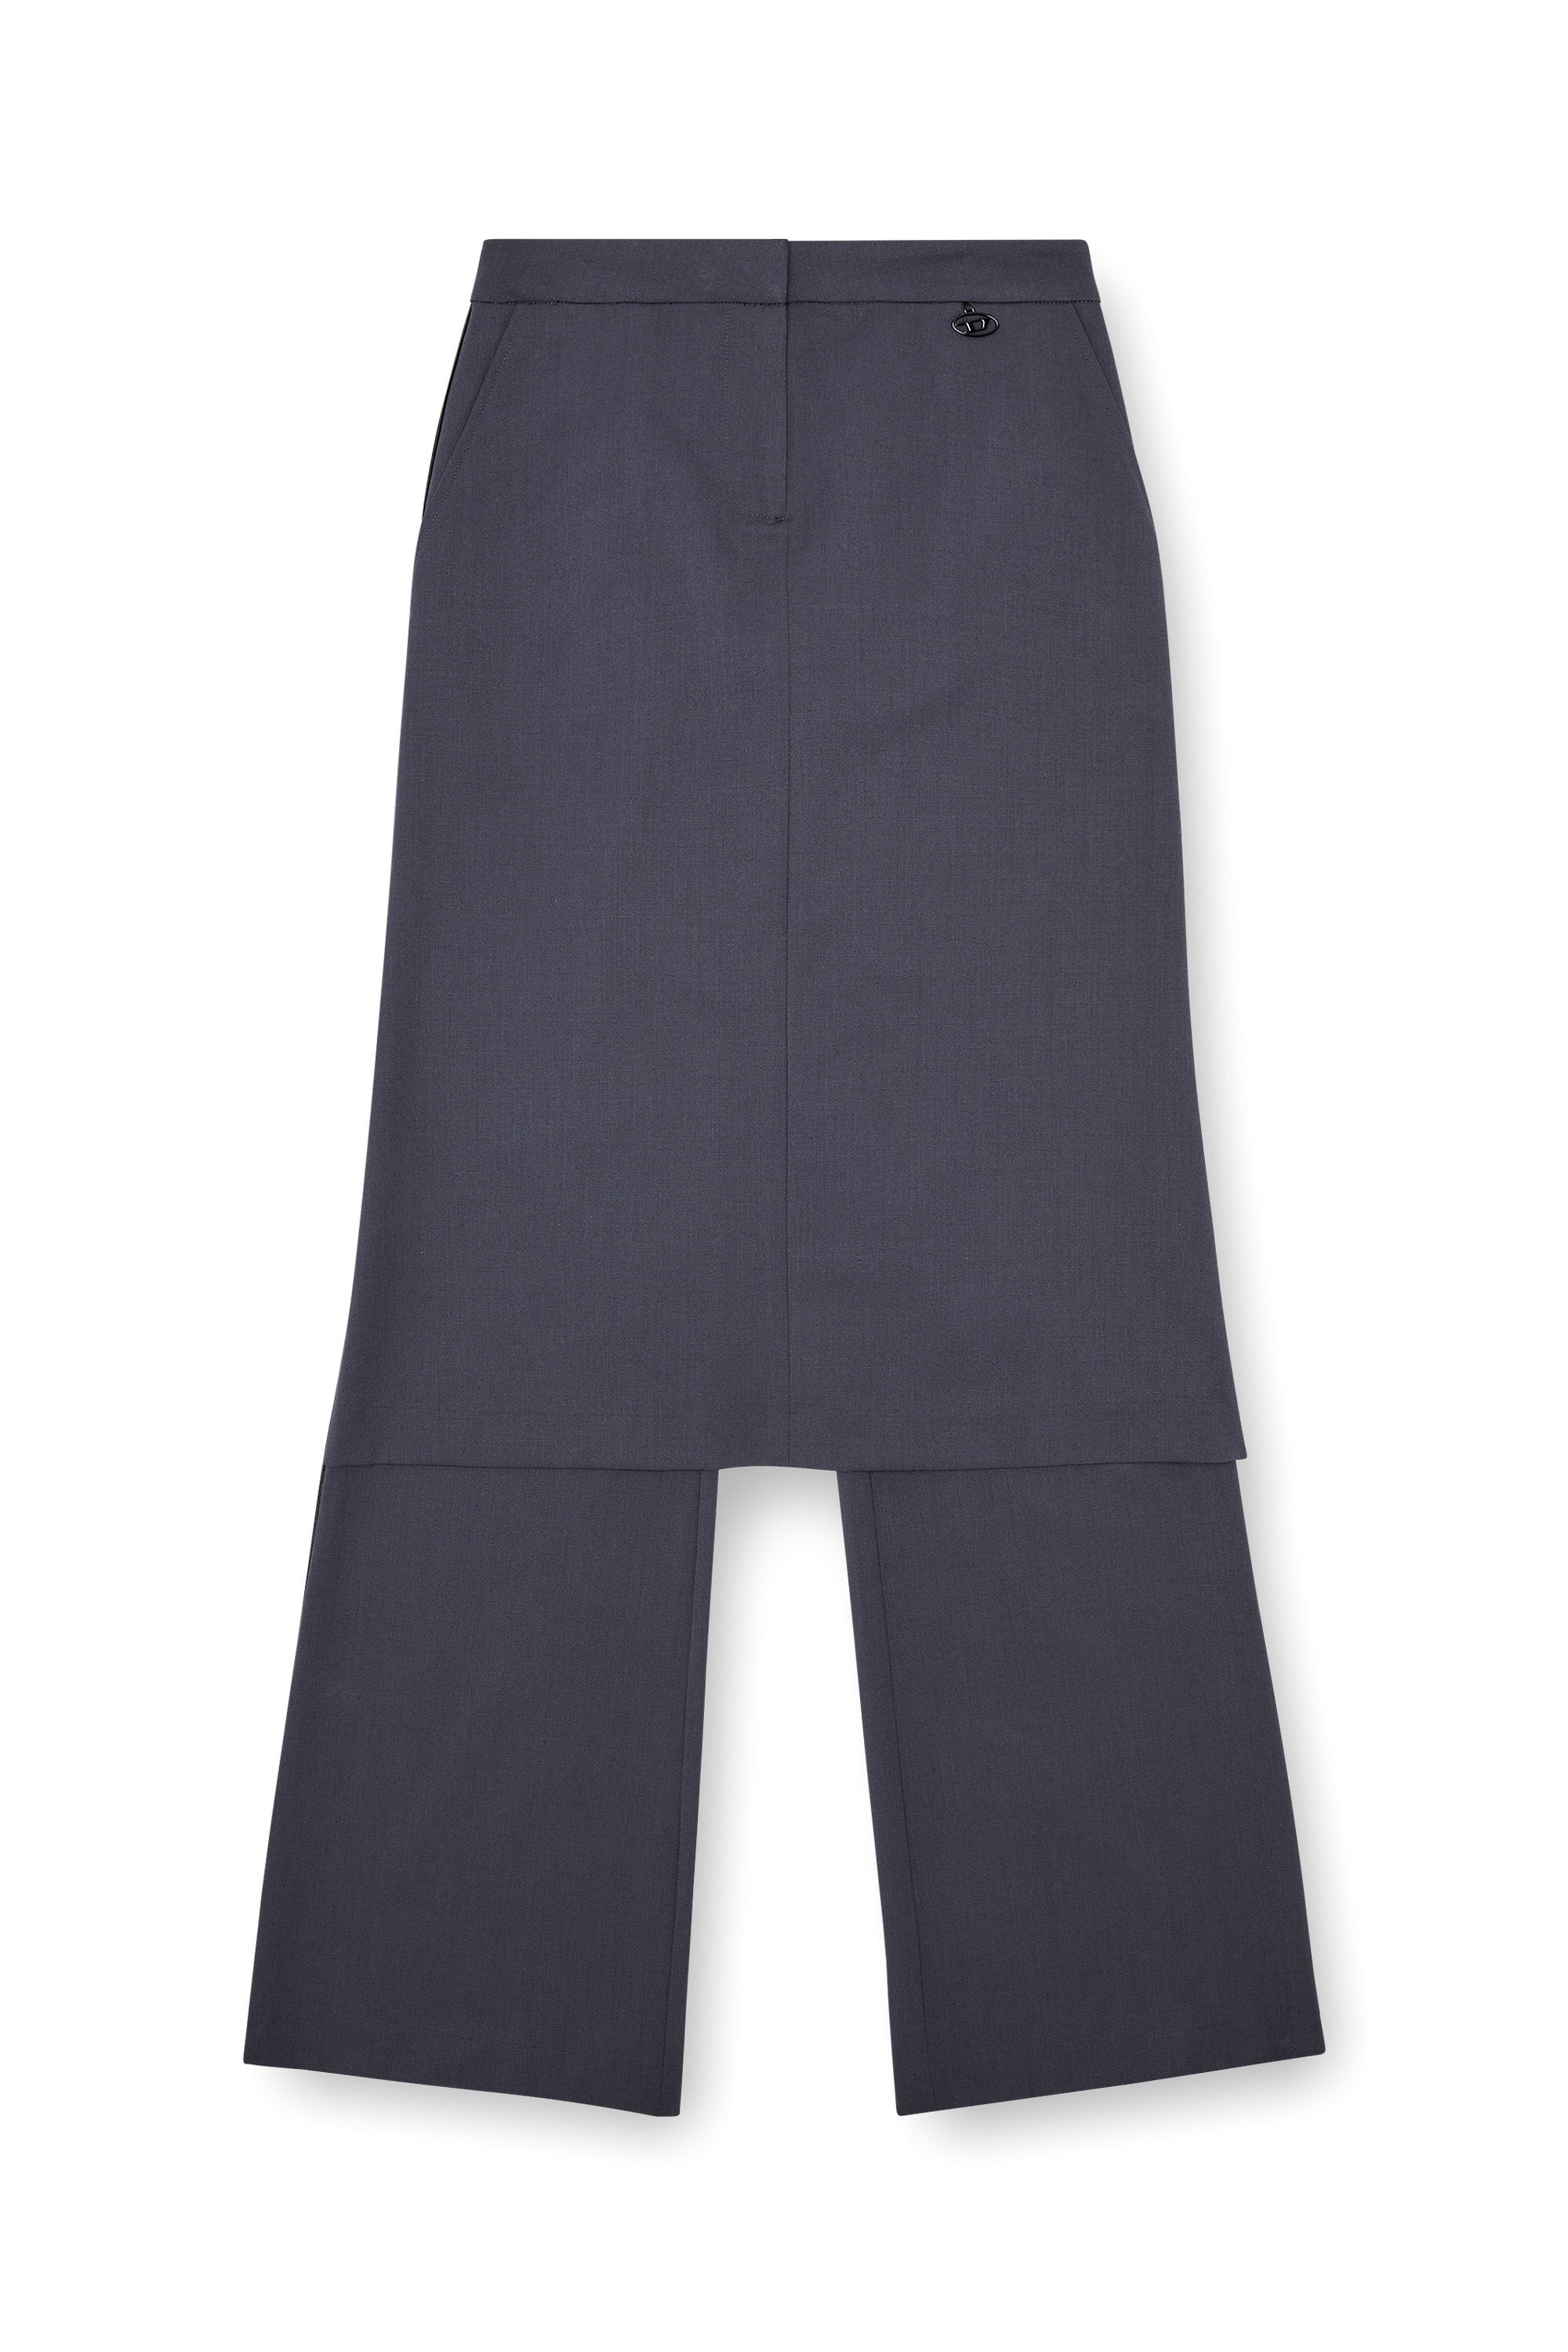 Diesel - P-EARL, Woman Hybrid skirt-pants in wool blend in Grey - Image 2